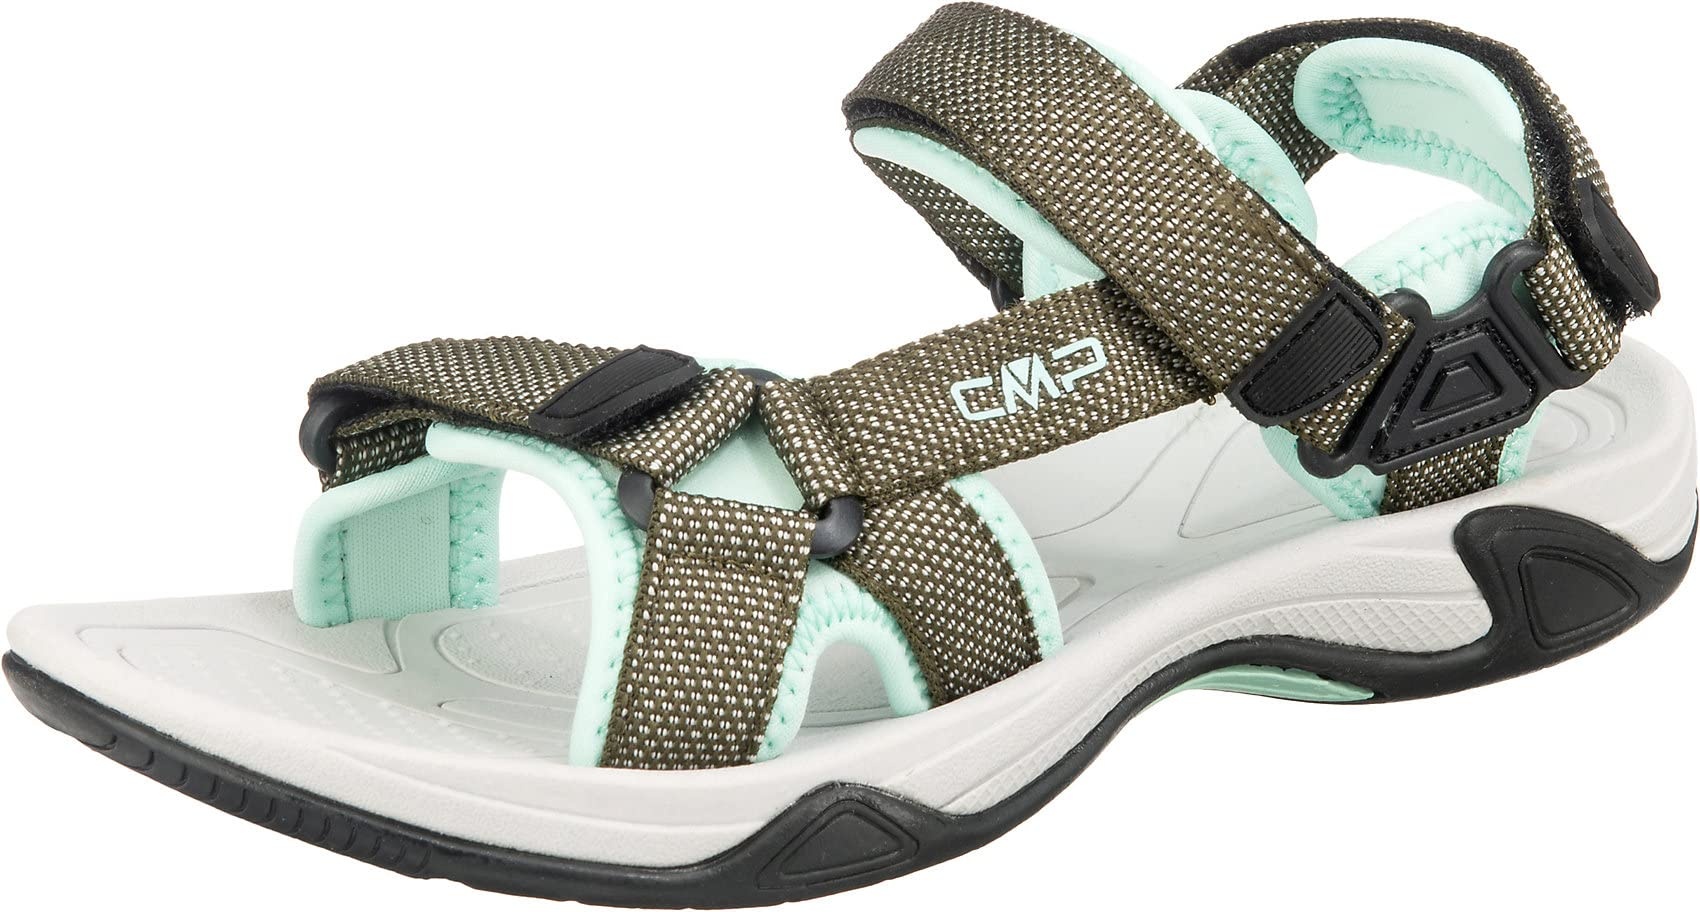 CMP Damen hamal wmn hiking sandaal sandals, Khaki, 38 EU